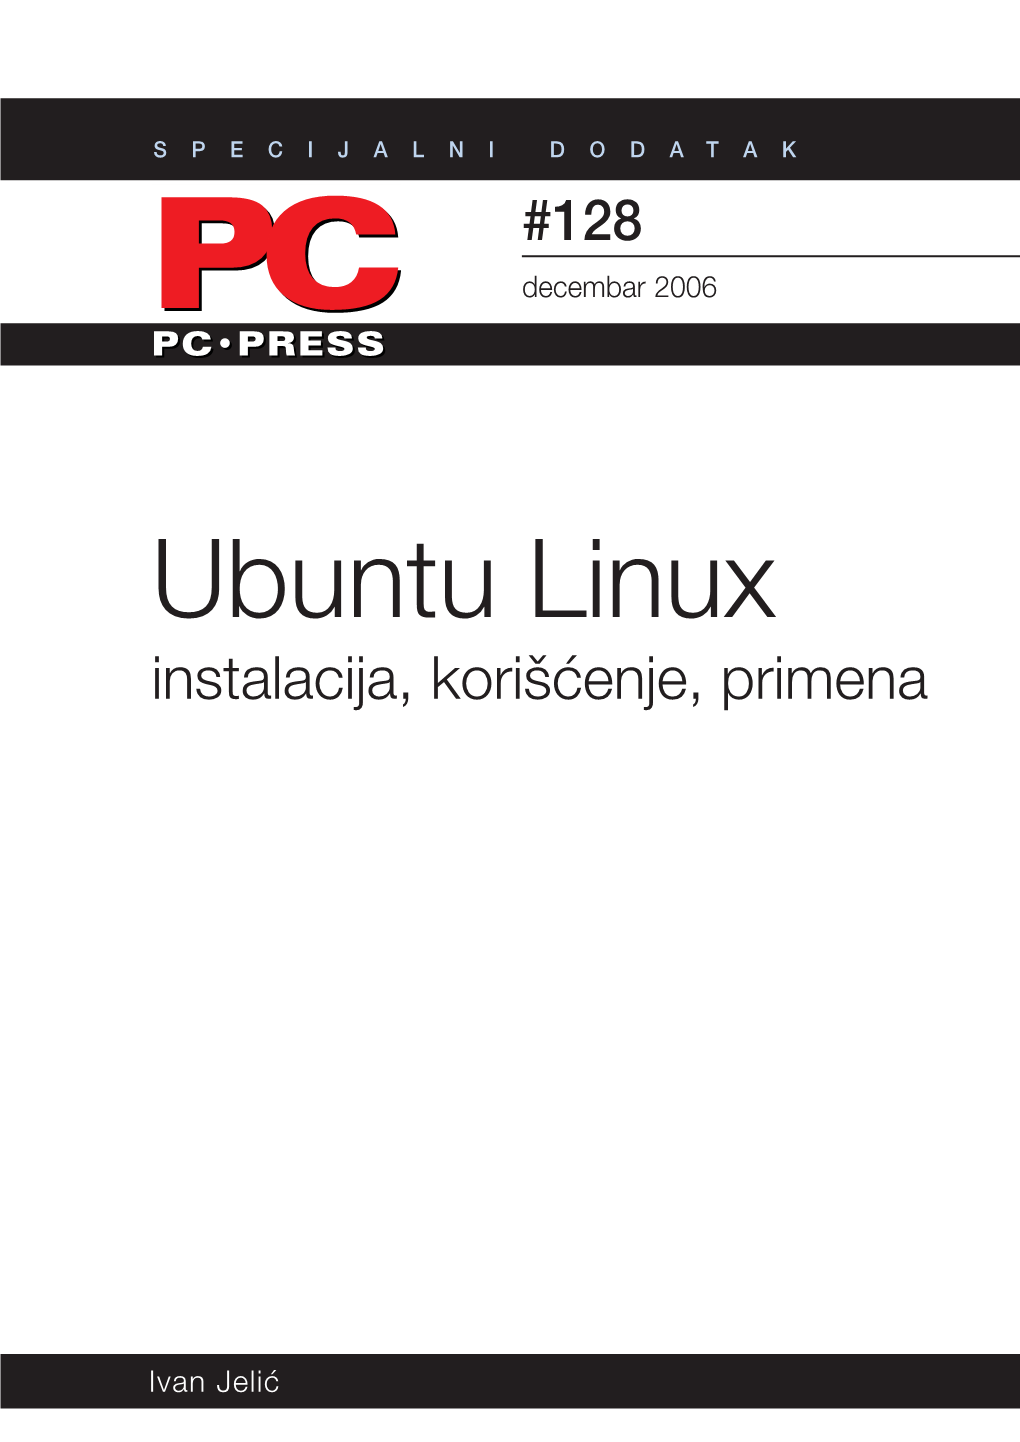 Ubuntu Linux Ti­Čno Svi­ Delovi­ Operativ­Nog Sis­Tema I­Zu­Zev Ker­ Kako Je Popu­Larnost GNU/Linux‑A Rasla, Nela